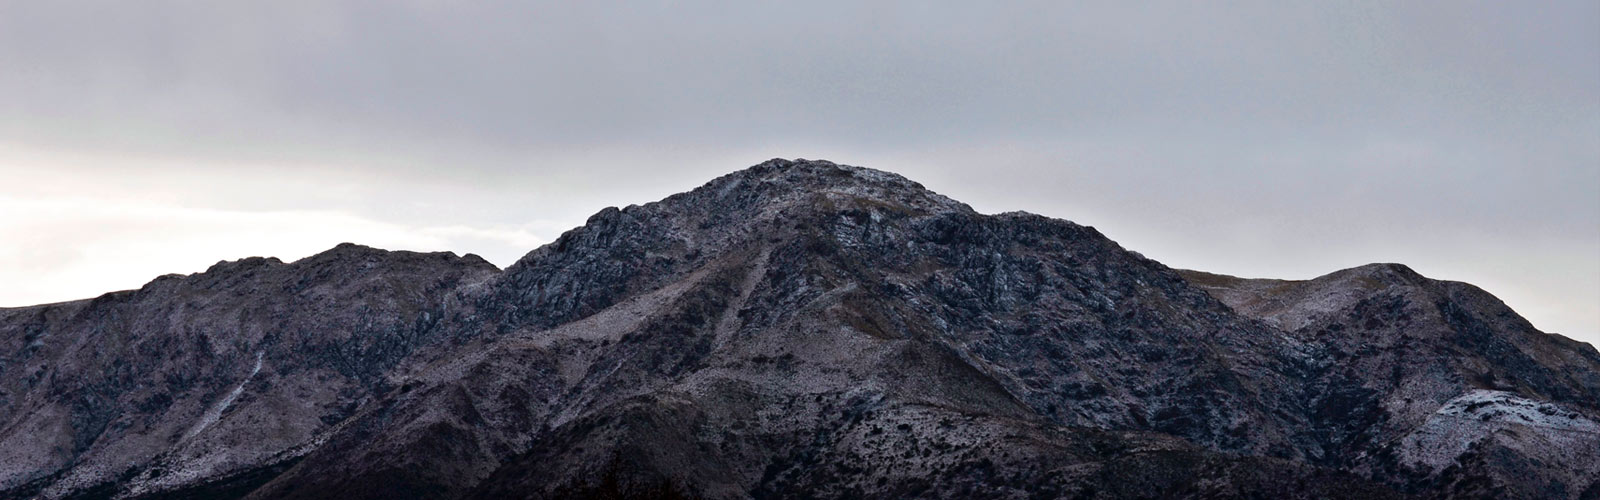 Capilla del Monte:Uritorco Nevado